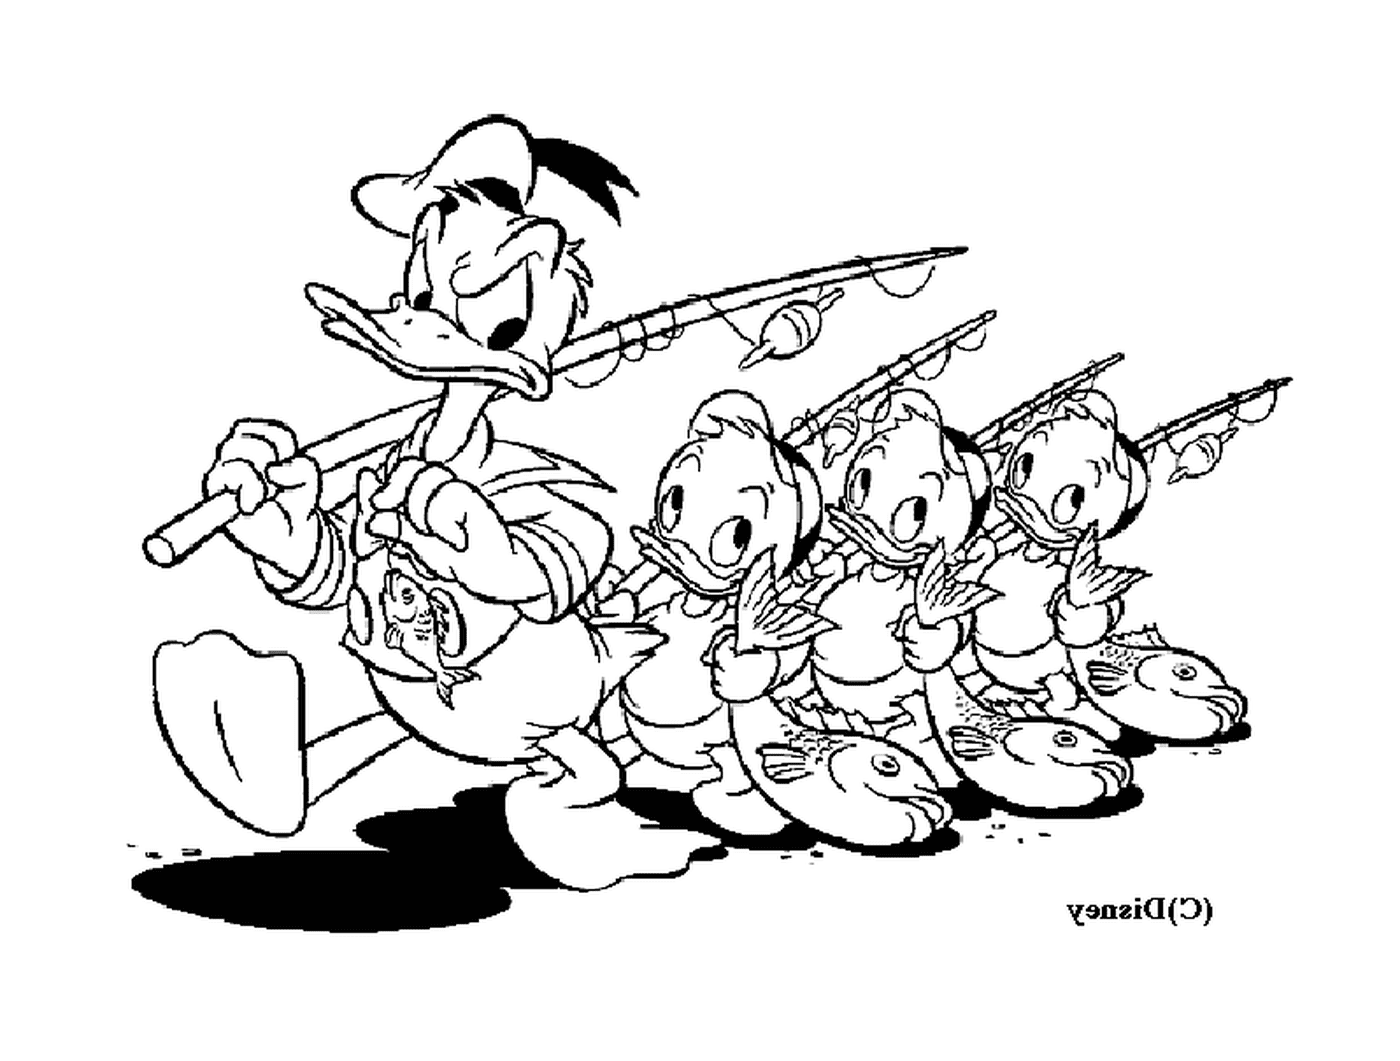   Donald et ses neveux pêchent avec joie 